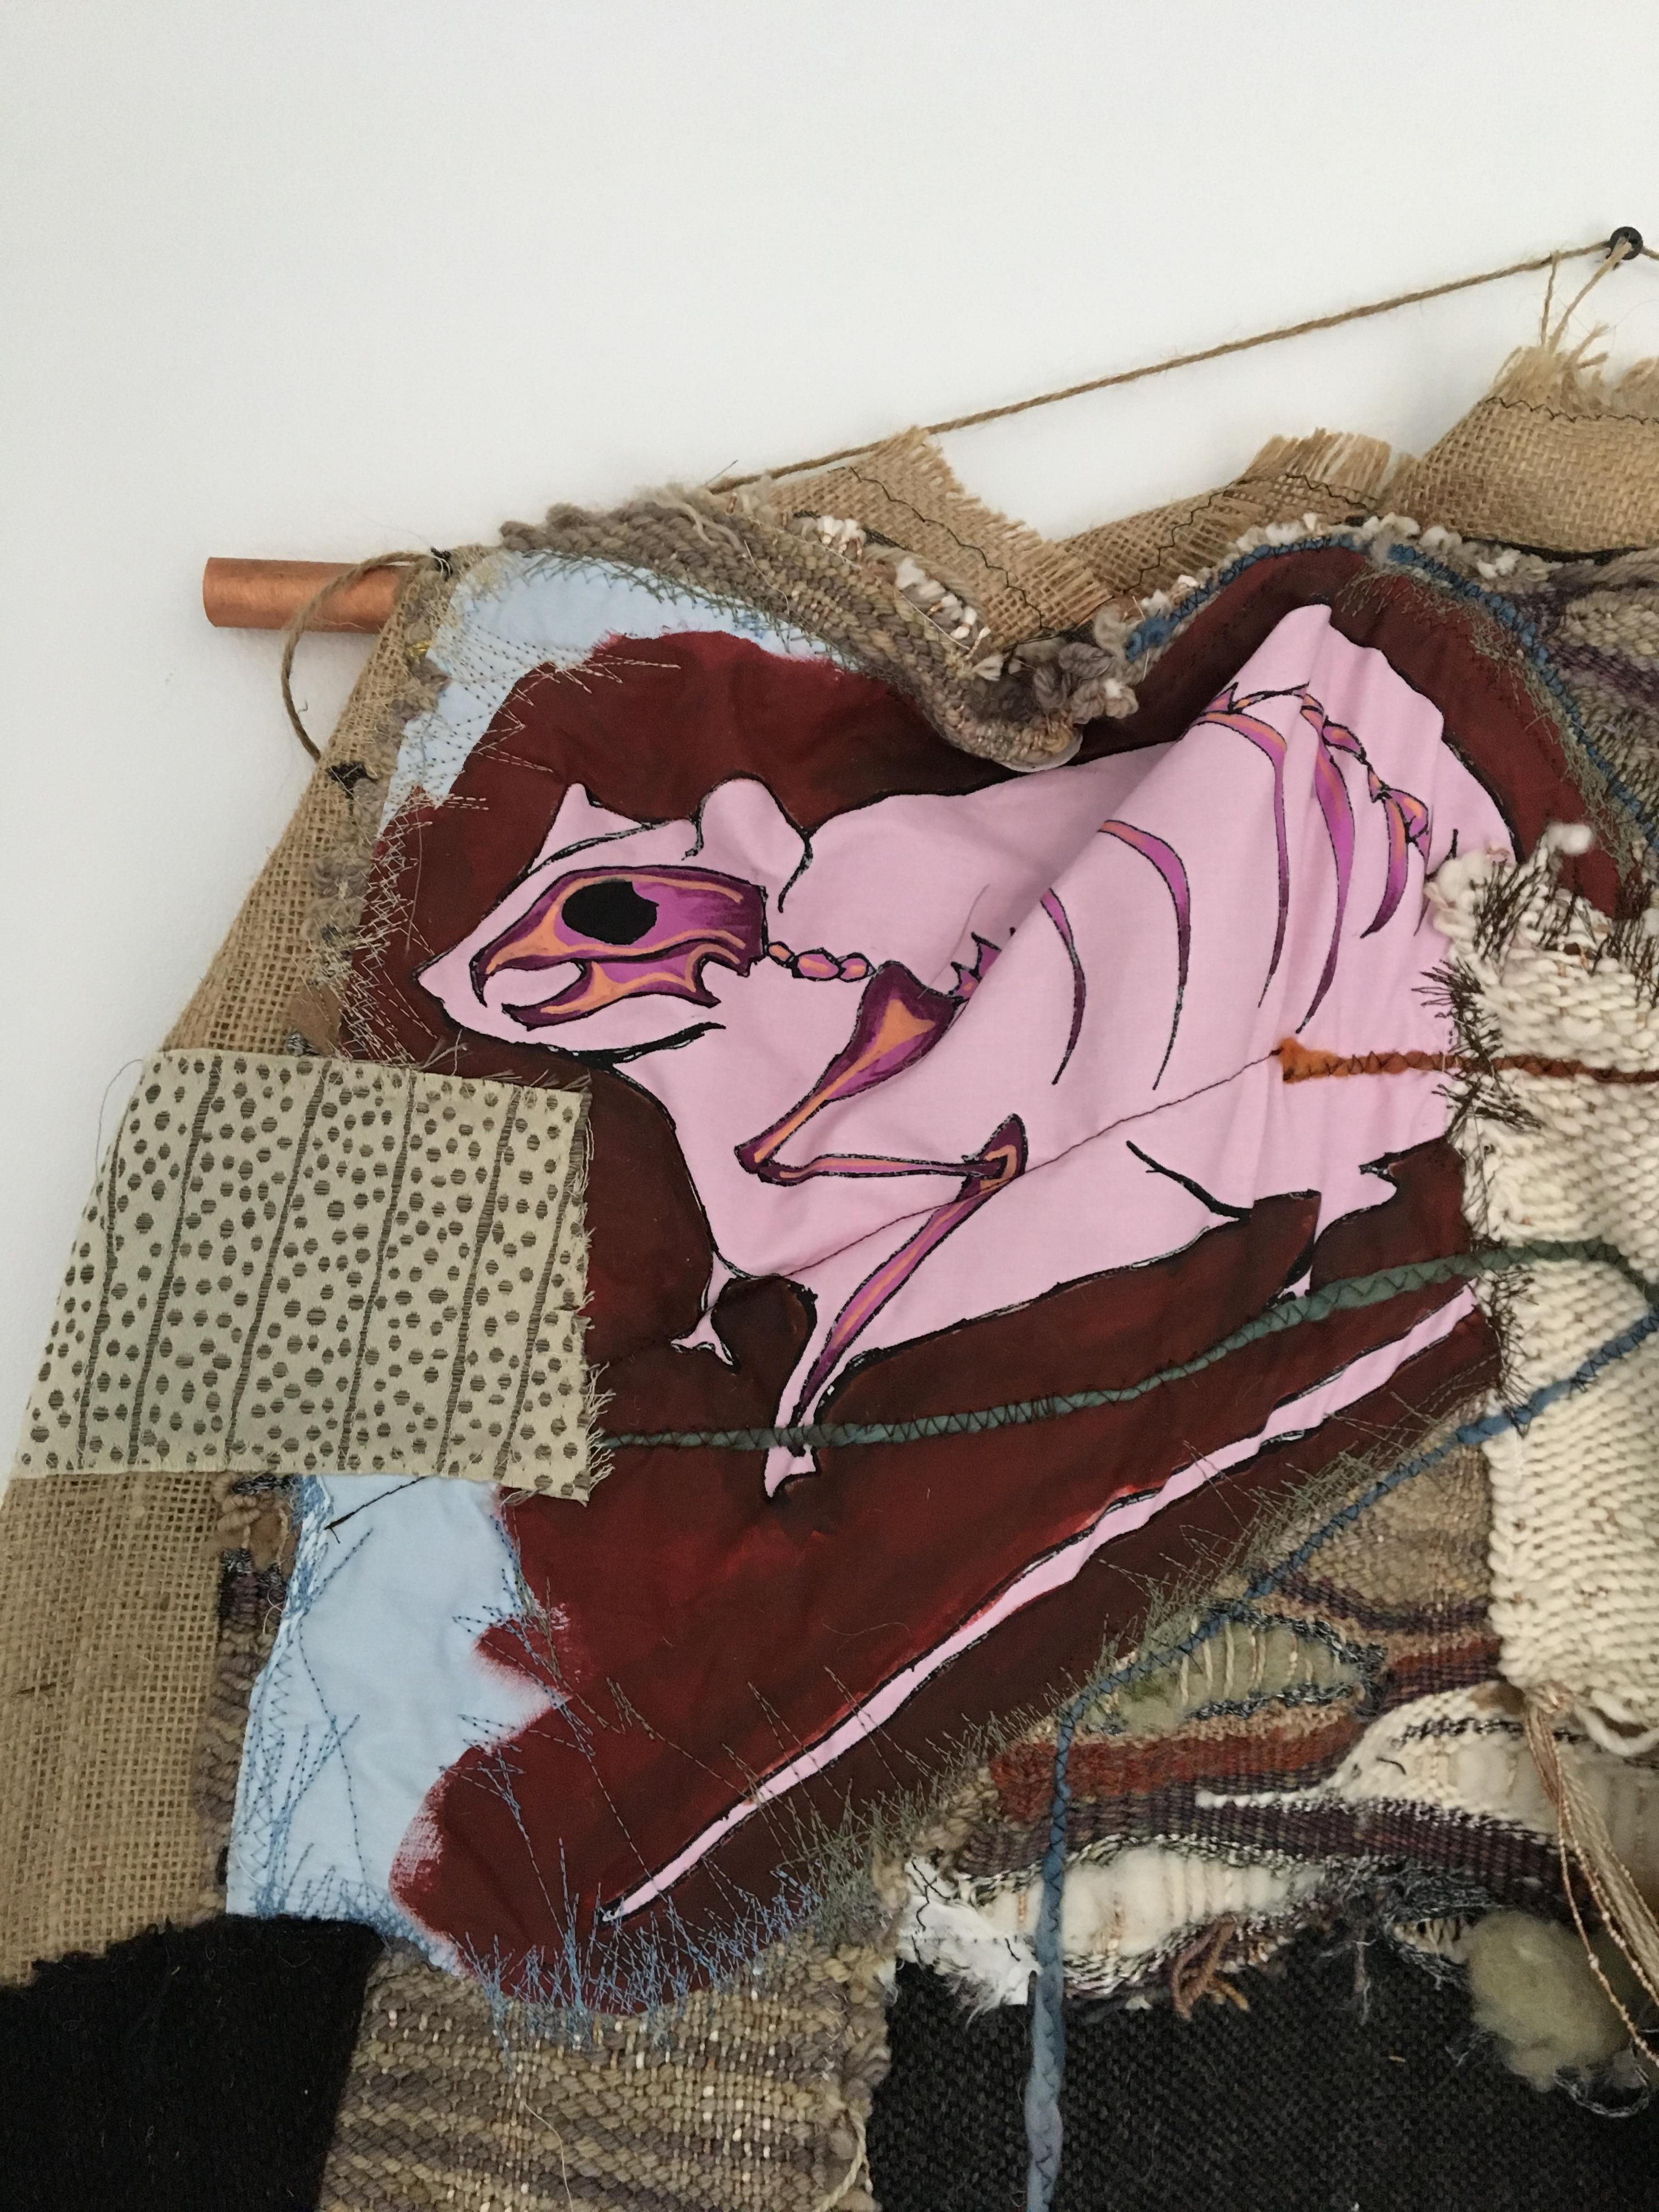 Textile Handwoven Wall Hanging: 'Rat Race' - Sculpture by Juliet Martin